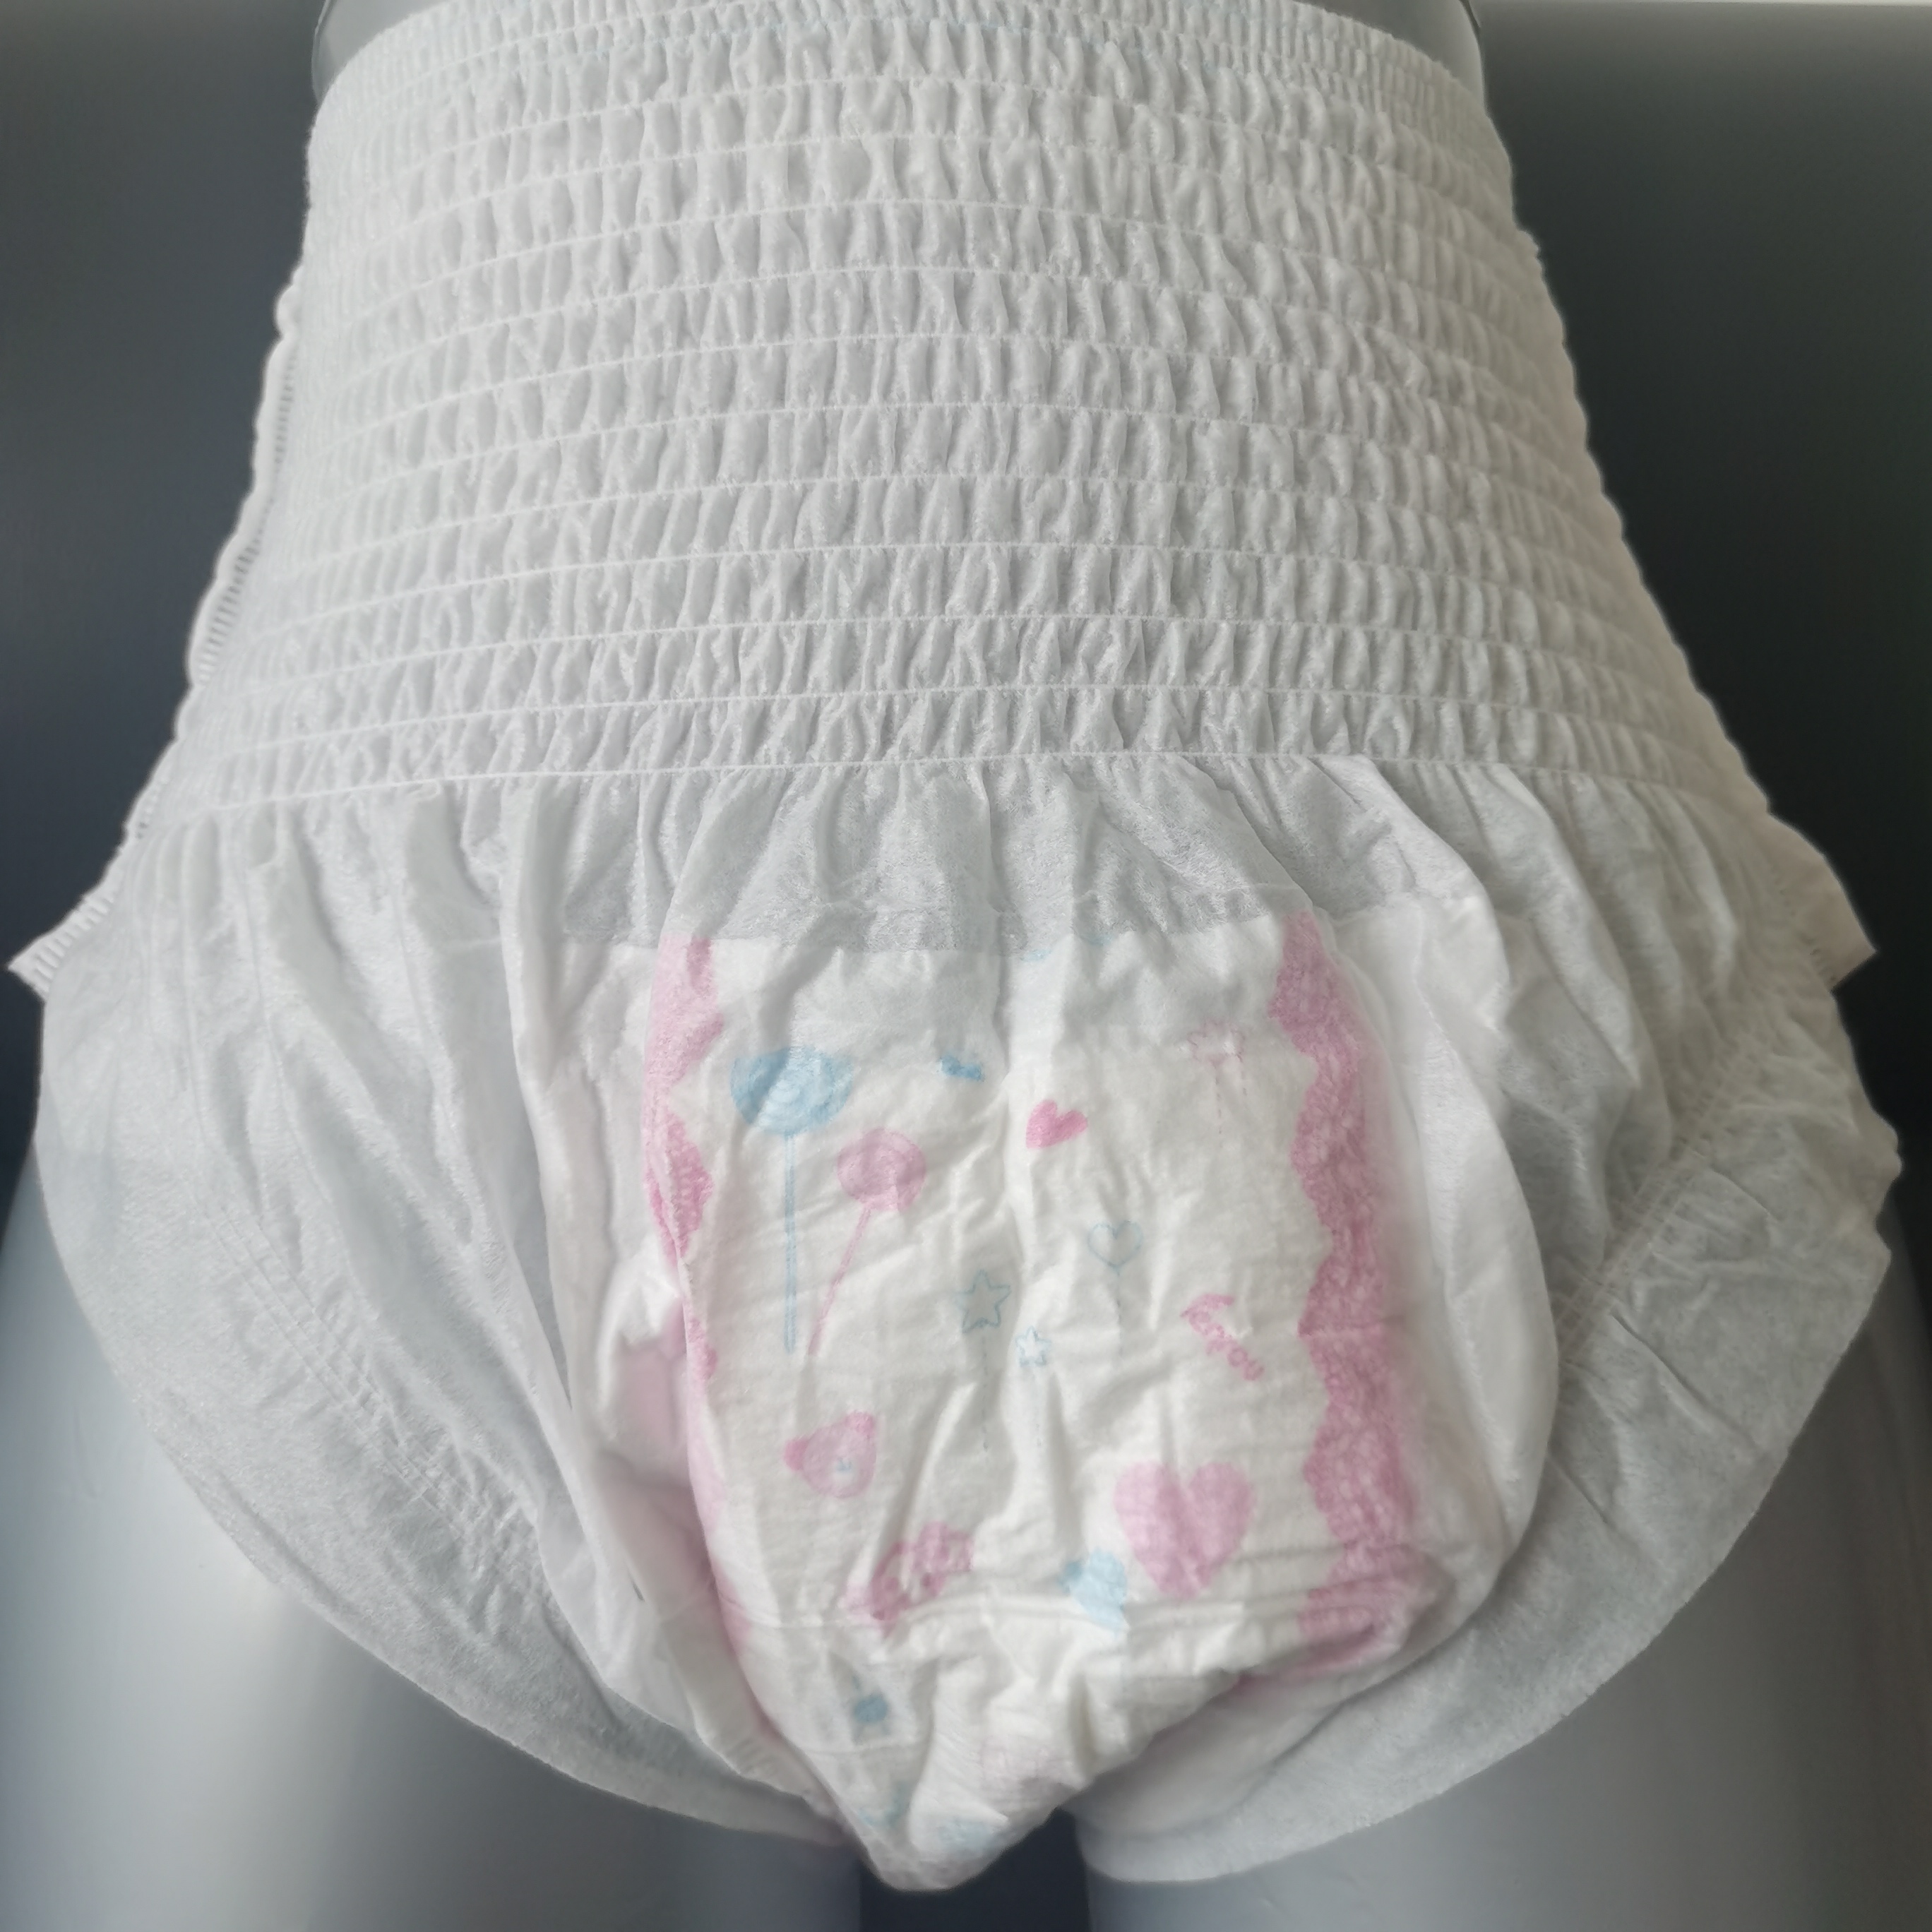 Direto da fábrica fornece calças de fraldas femininas calcinhas menstruais descartáveis ​​roupa íntima